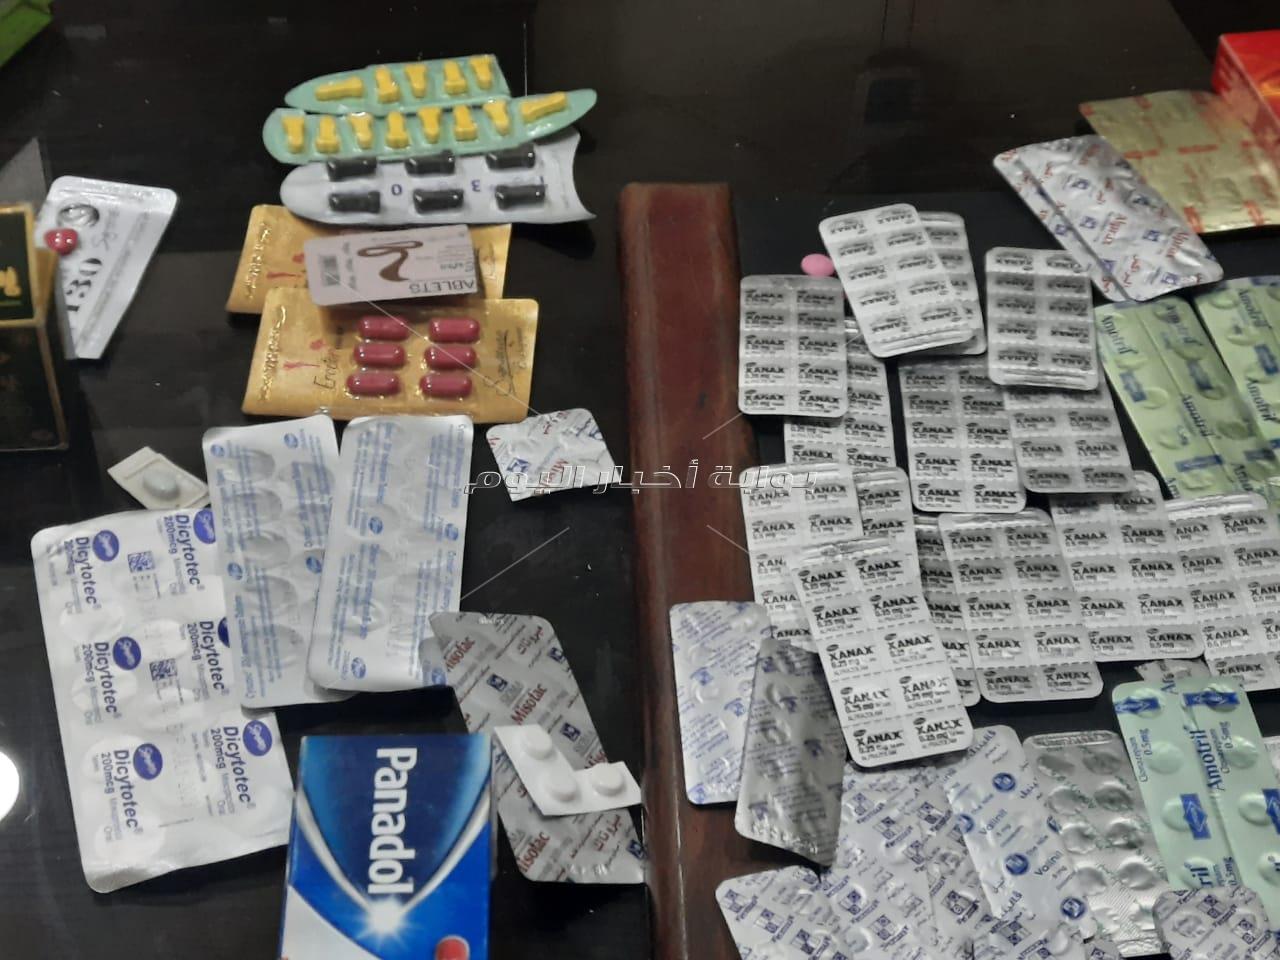 ضبط كمية كبيرة من مخدر الترامادول داخل صيدلية شهيرة بالقاهرة 